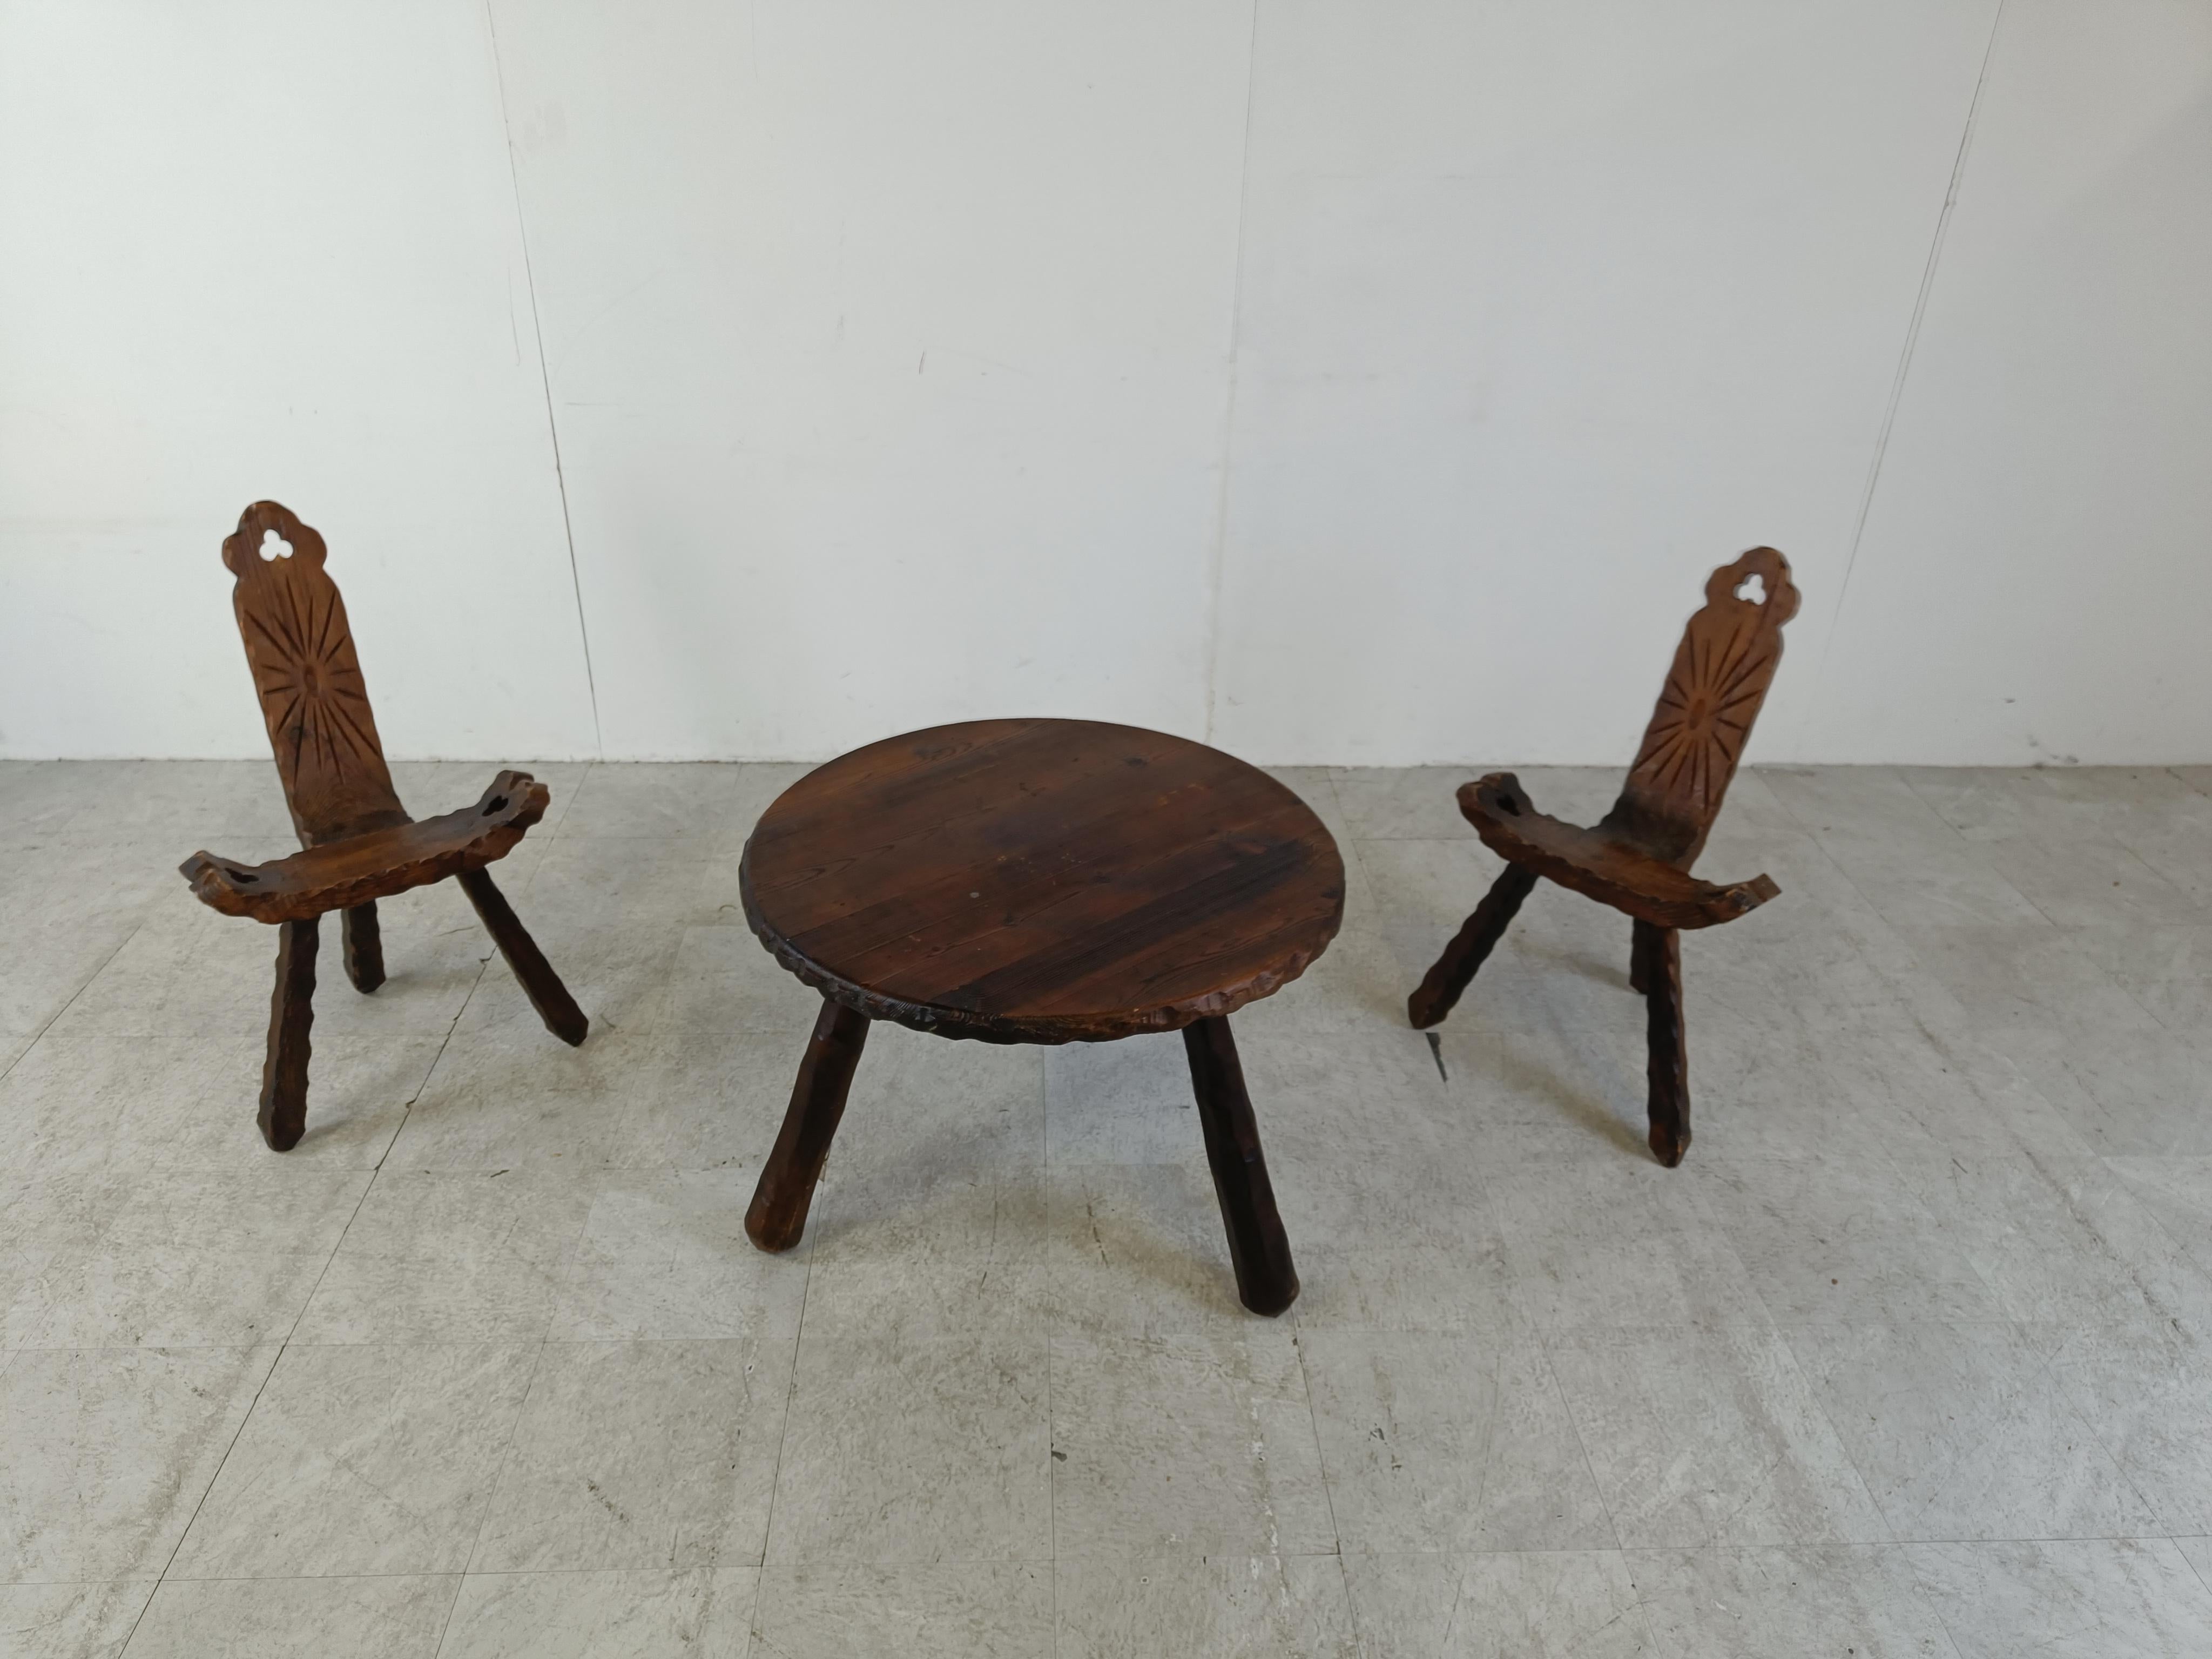 Authentiques tabourets en bois brutalistes espagnols avec table.

Les chaises sont joliment fabriquées avec des pieds en bois massif qui se vissent en place.

Il est rare de trouver un ensemble avec une table assortie.

De superbes pièces